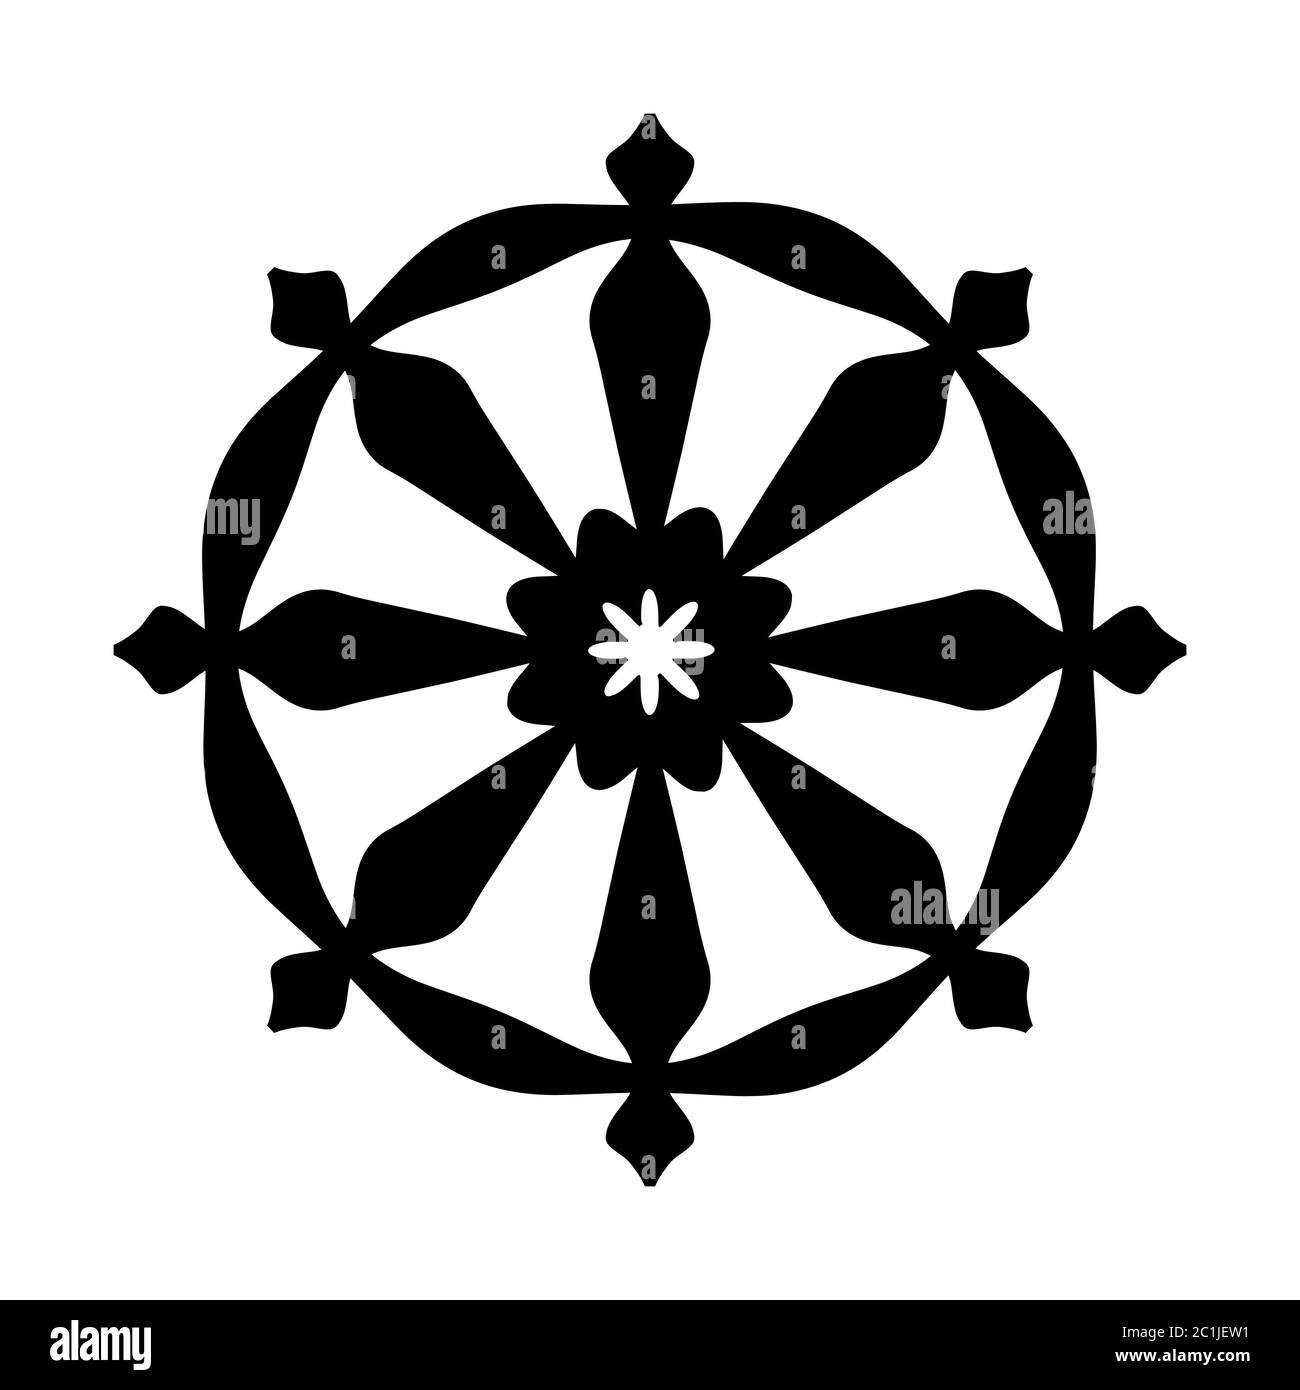 Roue de Samsara — symbole de la réincarnation, du cycle de la mort et de la renaissance (signe sacral de toutes les religions indiennes). Banque D'Images